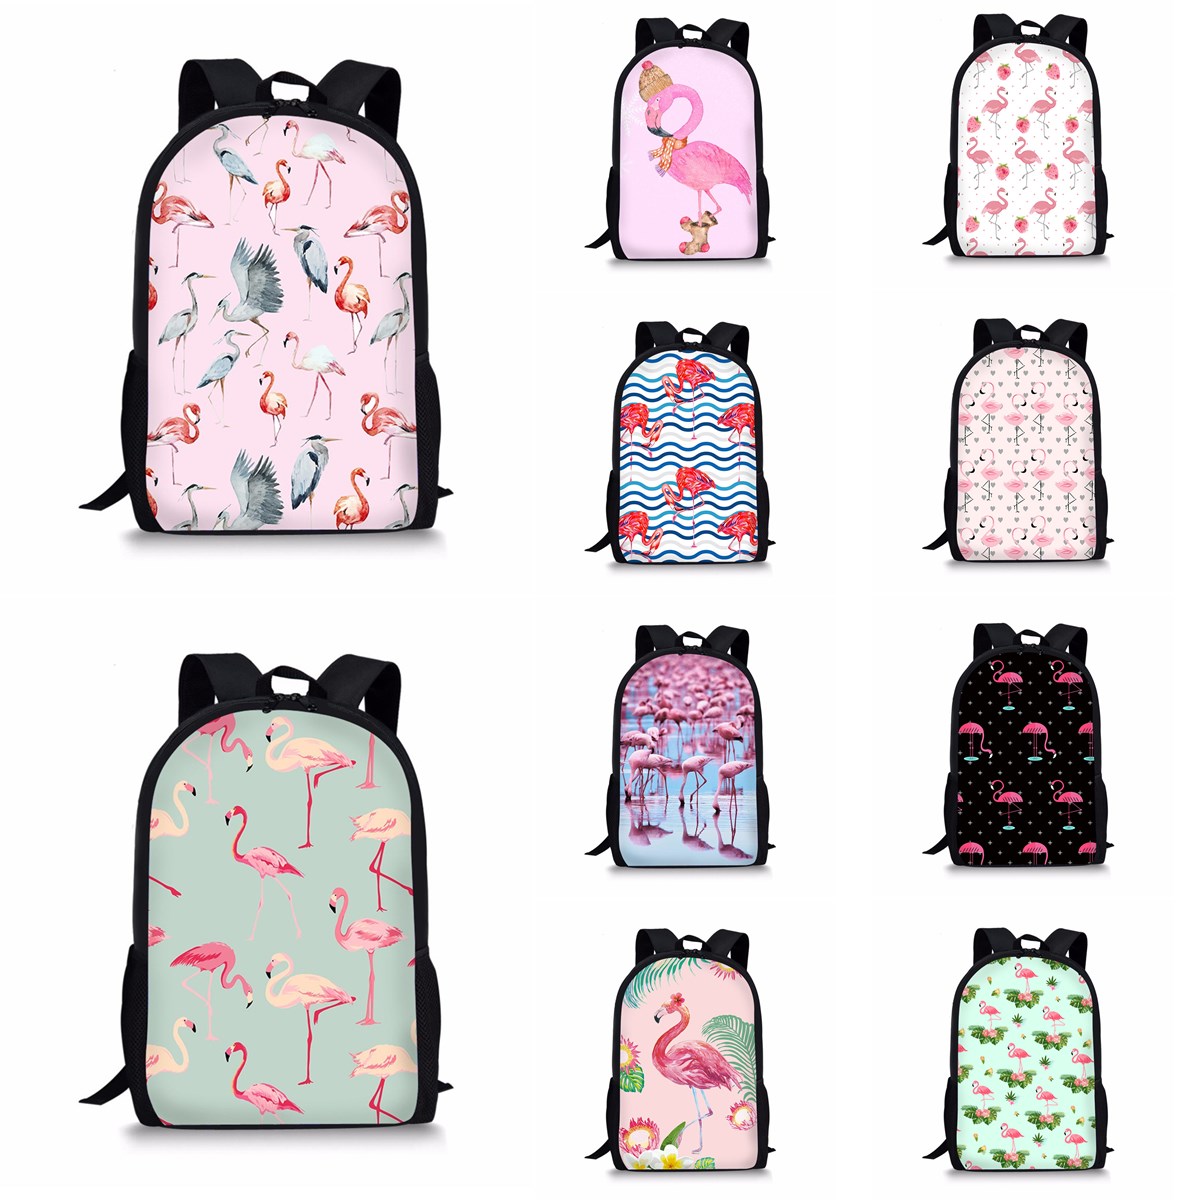 Flamingo-Backpack-Student-Travel-School-College-Shoulder-Bag-Handbag-Camping-Rucksack-1390454-1